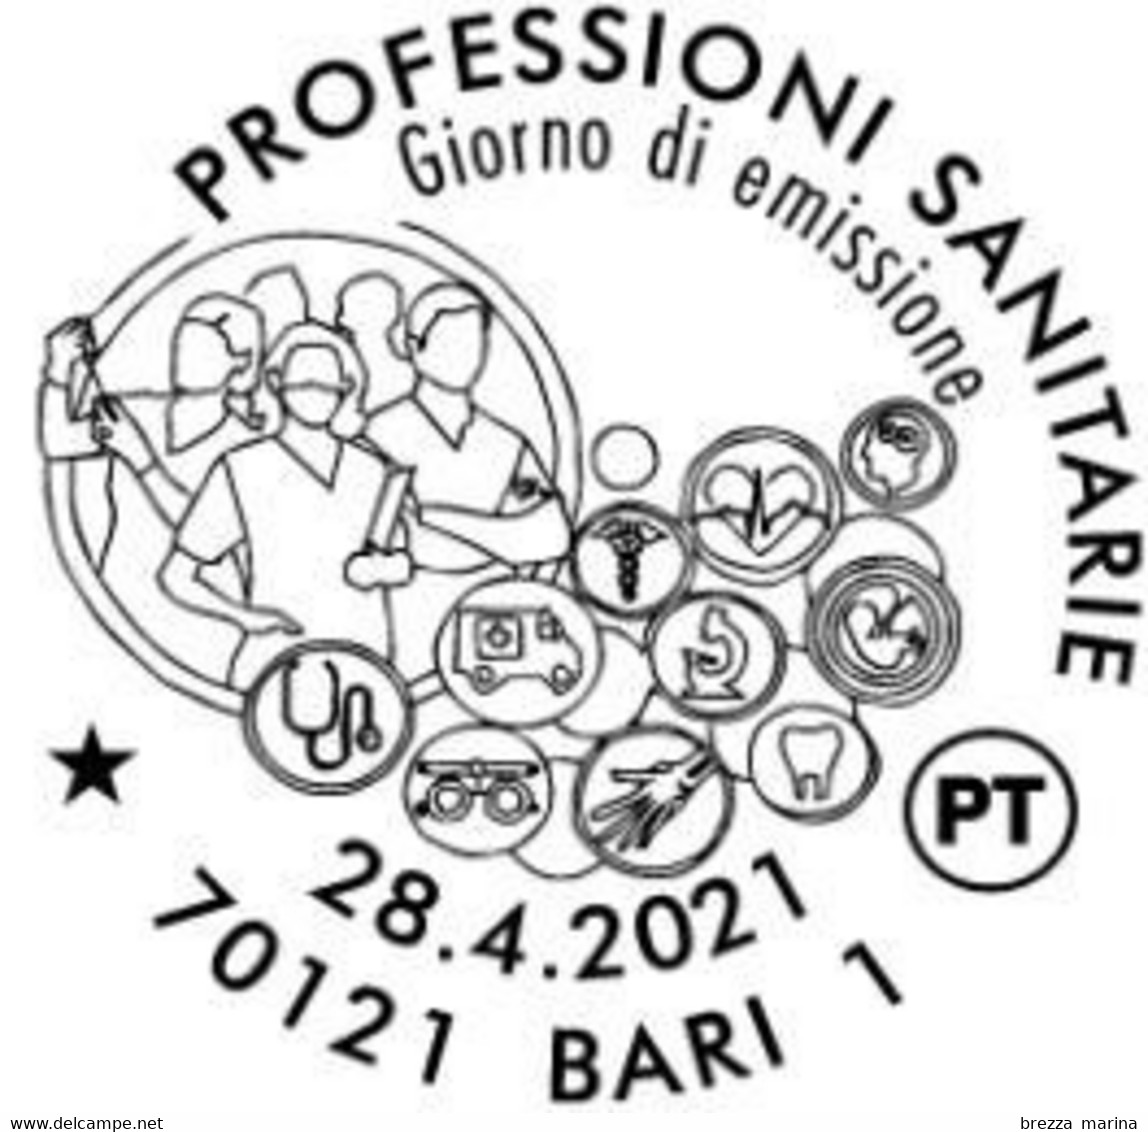 Nuovo - MNH - ITALIA - 2021 - Professioni Sanitarie – Sagome E Figure Stilizzate - B - Alfanumerico - 2021-...:  Nuevos